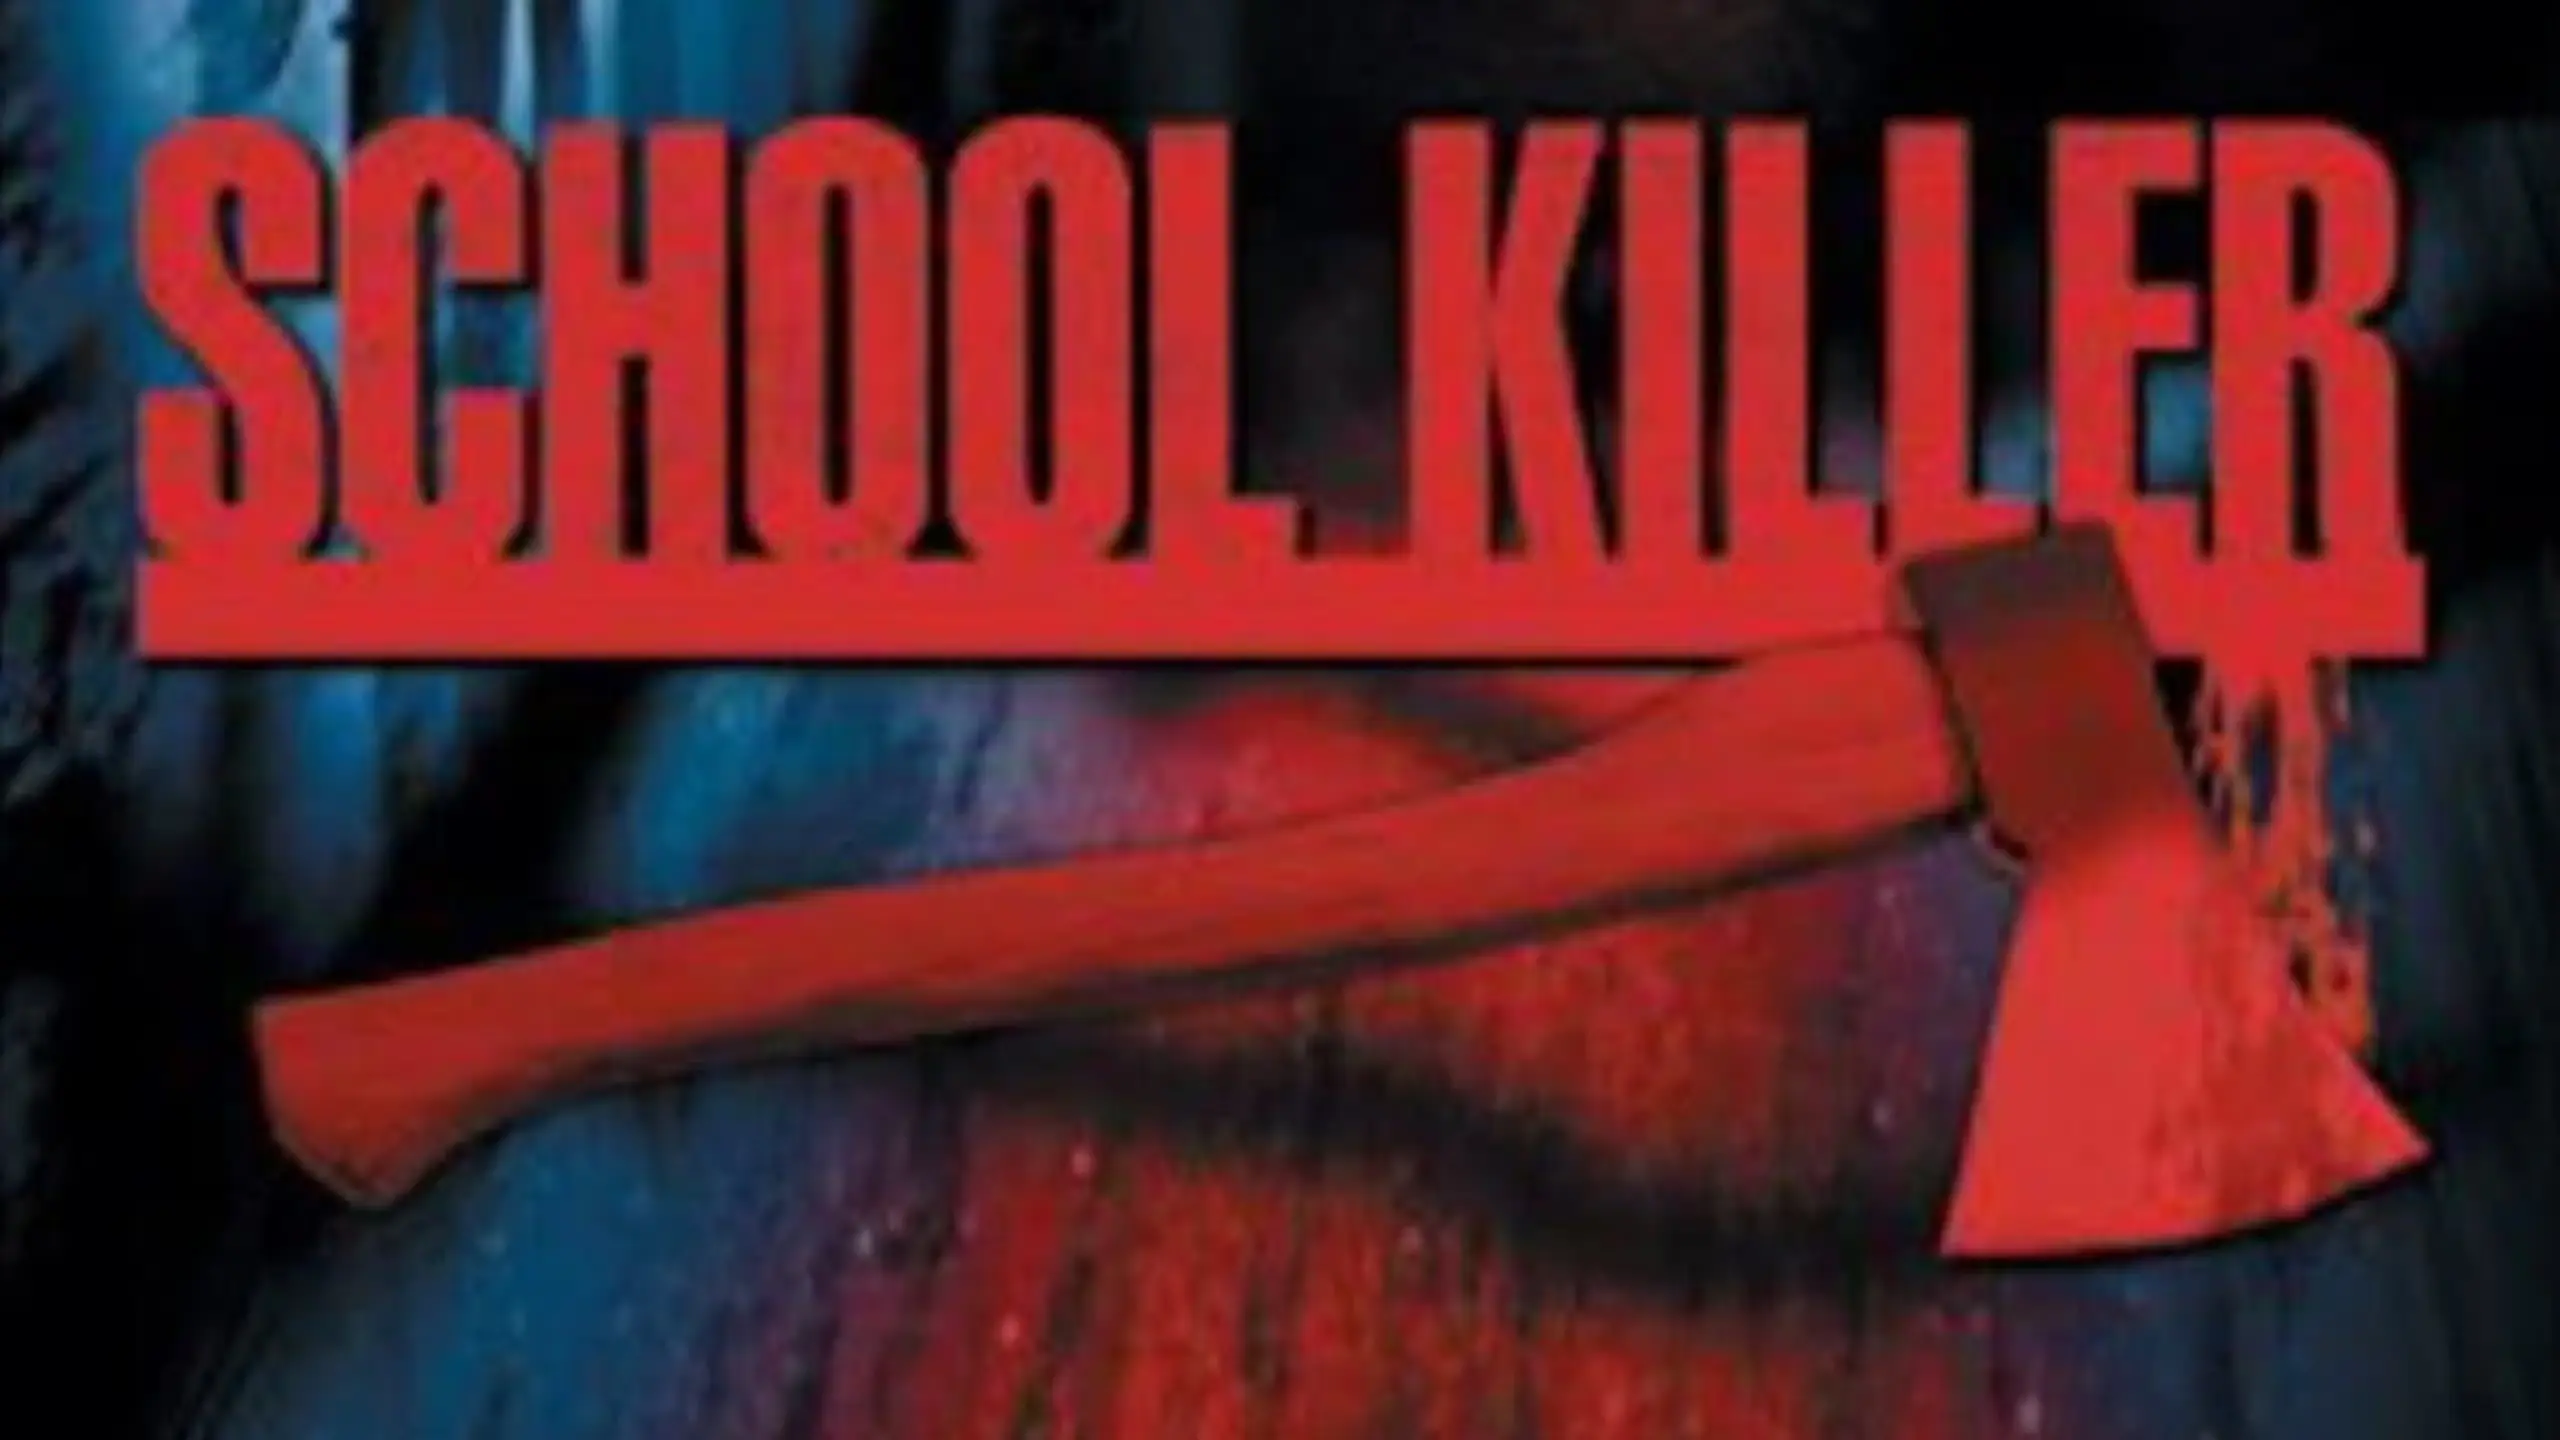 School Killer - Die Nacht des Grauens